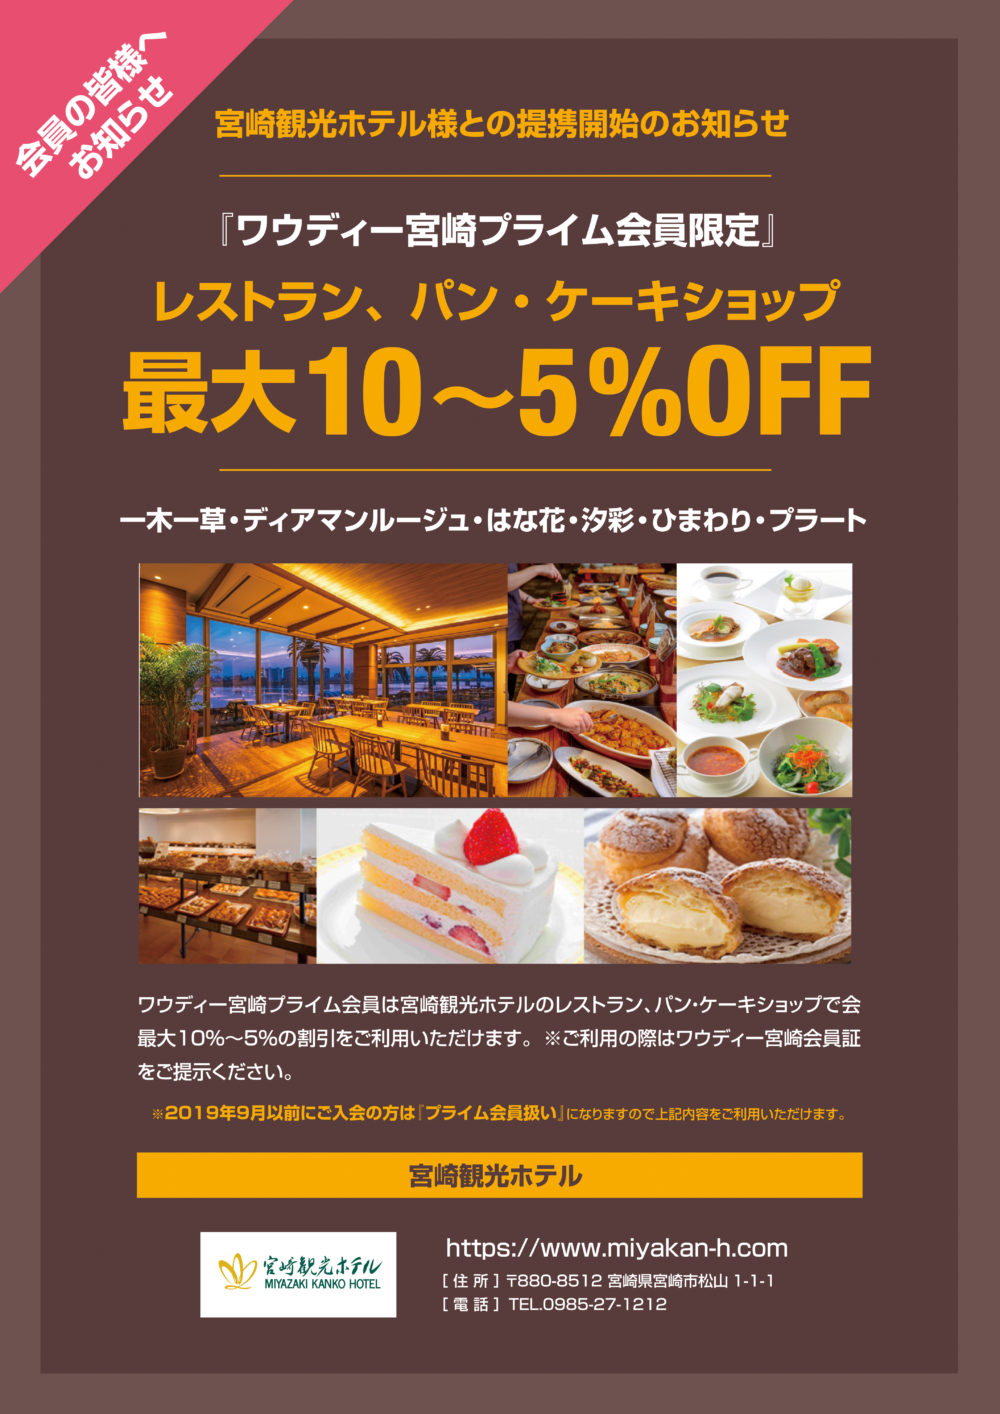 宮観のレストラン パンケーキショップが割引でご利用頂けます 宮崎市中心部のフィットネスクラブ ワウディー